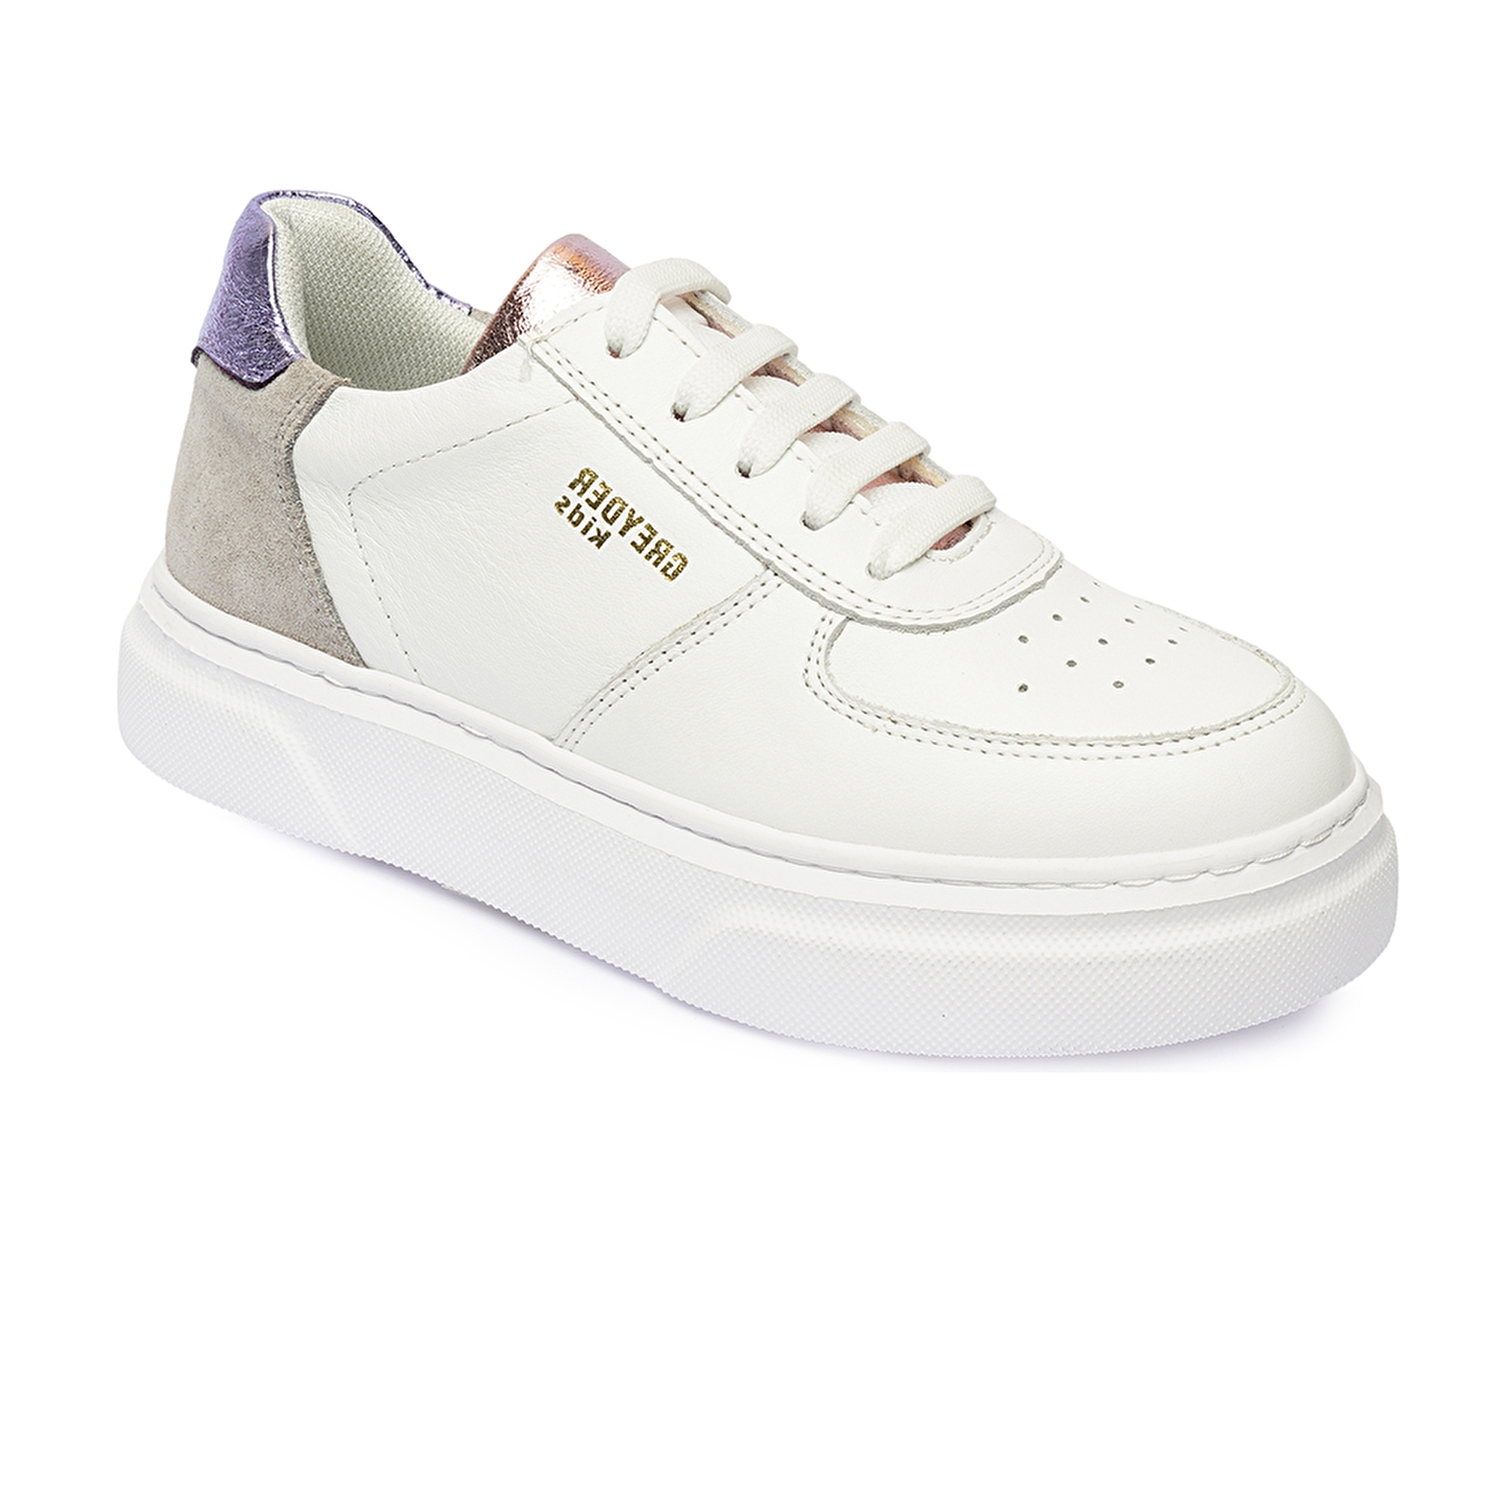 Kız Çocuk Beyaz Pembe Hakiki Deri Sneaker Ayakkabı 4Y5ZA59507-1